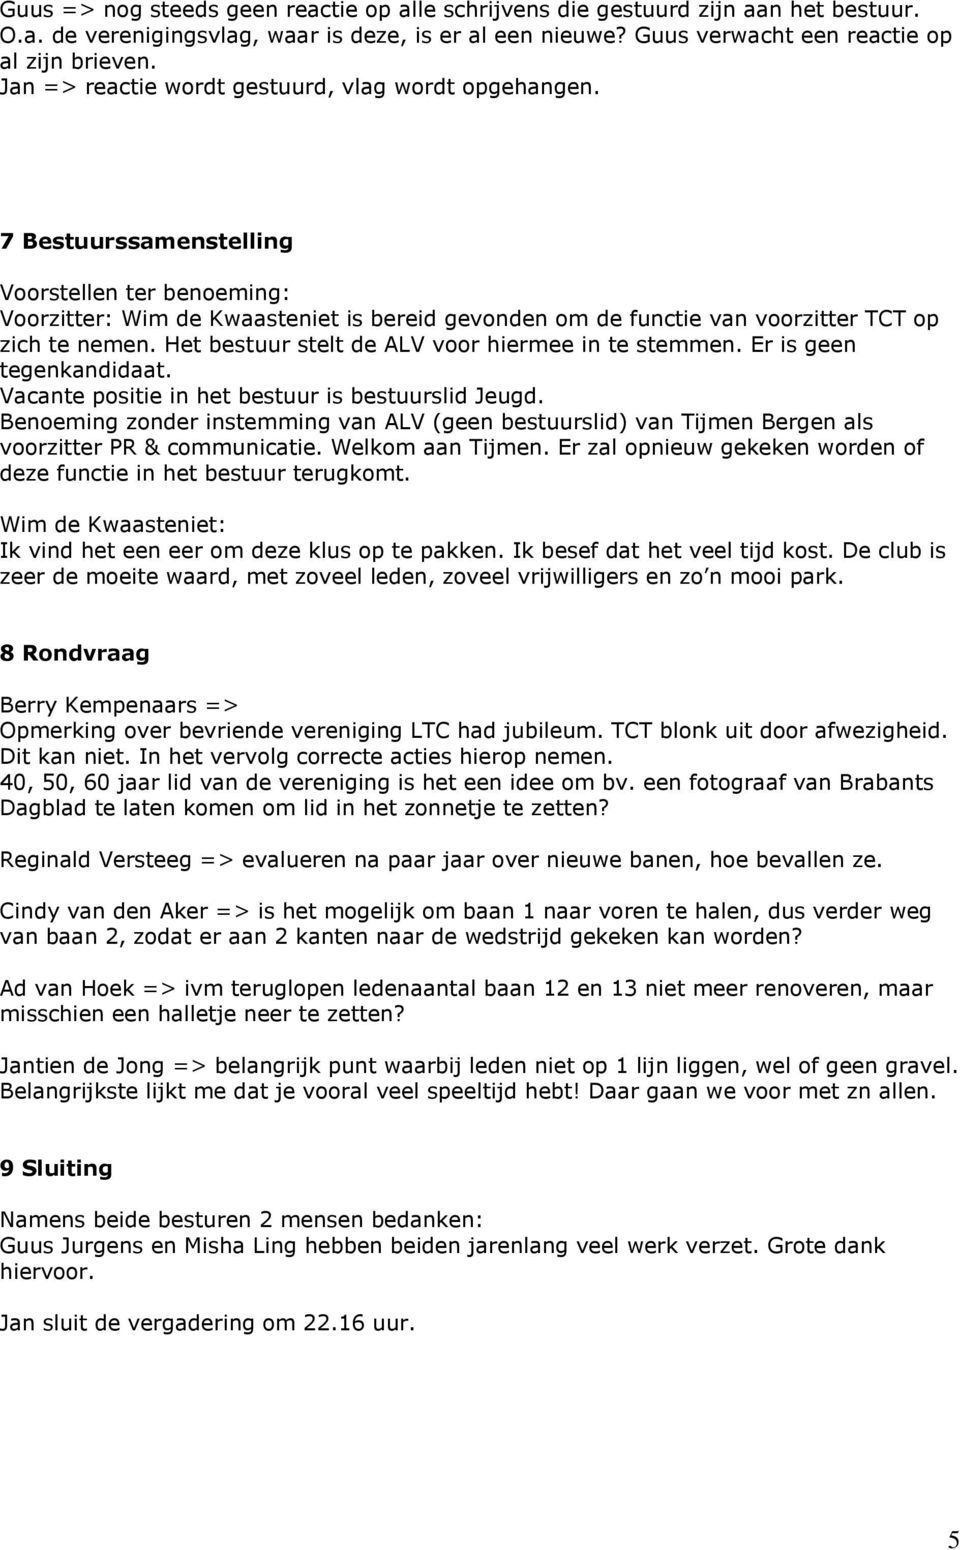 7 Bestuurssamenstelling Voorstellen ter benoeming: Voorzitter: Wim de Kwaasteniet is bereid gevonden om de functie van voorzitter TCT op zich te nemen.